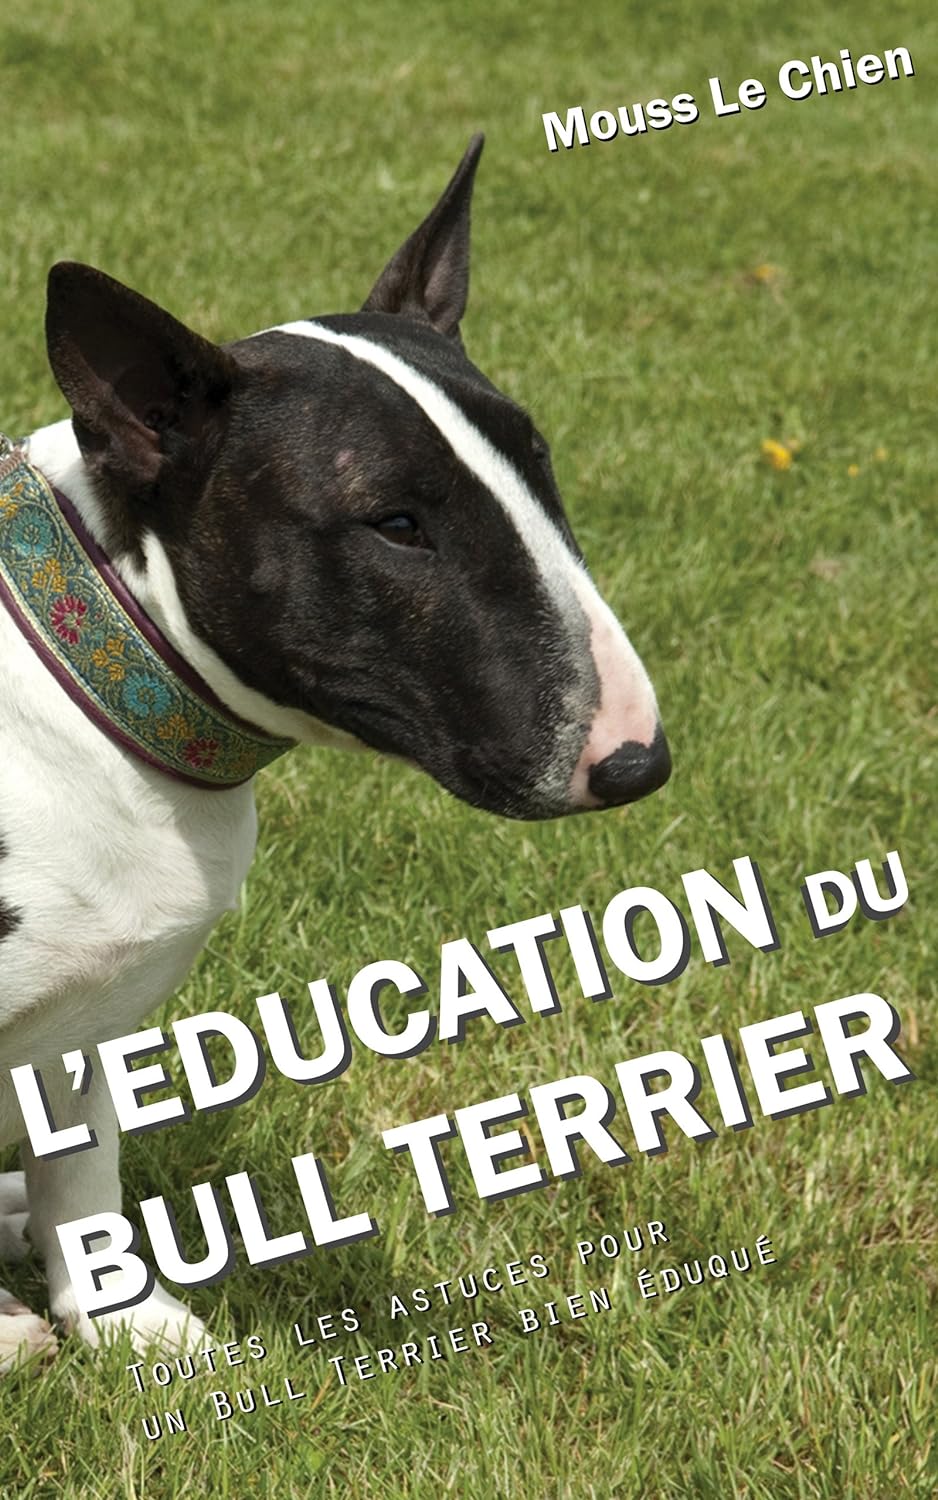 education bull terrier